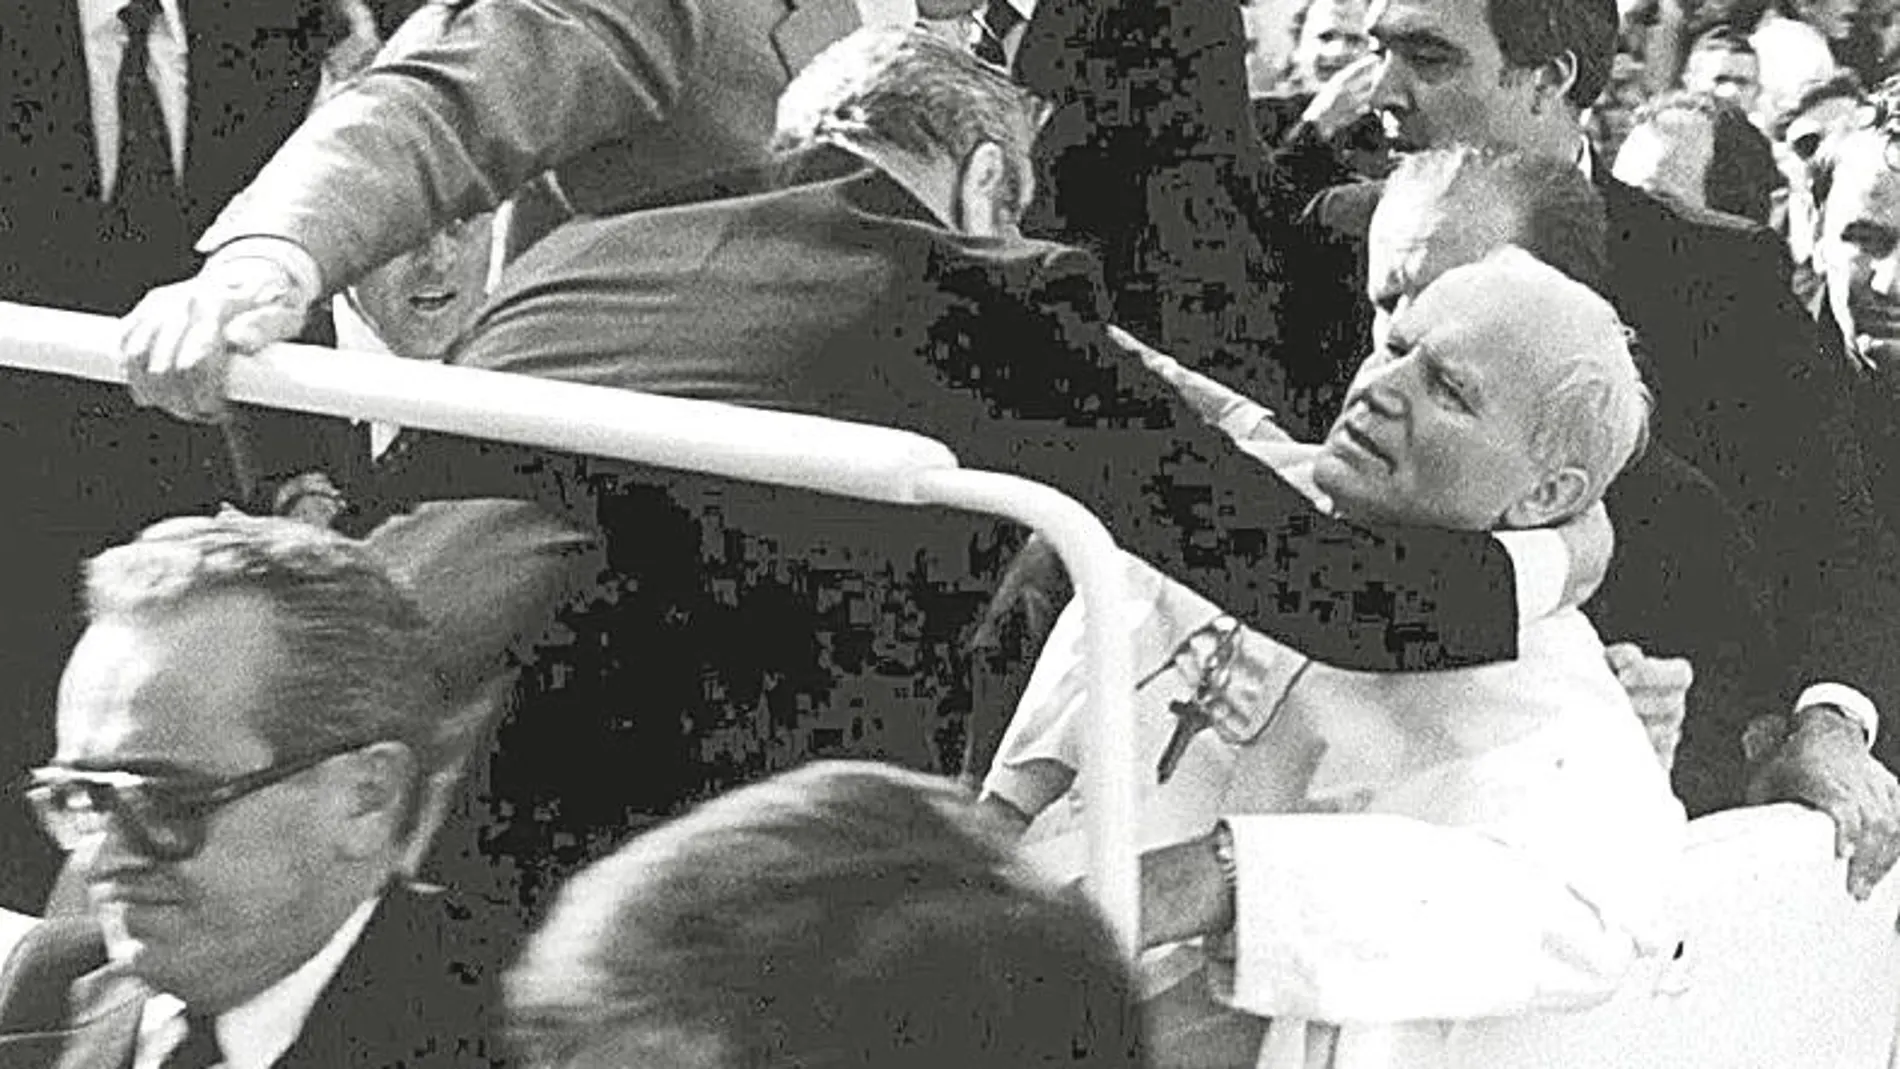 El 13 de mayo de 1981 en la Plaza de San Pedro, el Pontífice recibió dos balazos / Efe